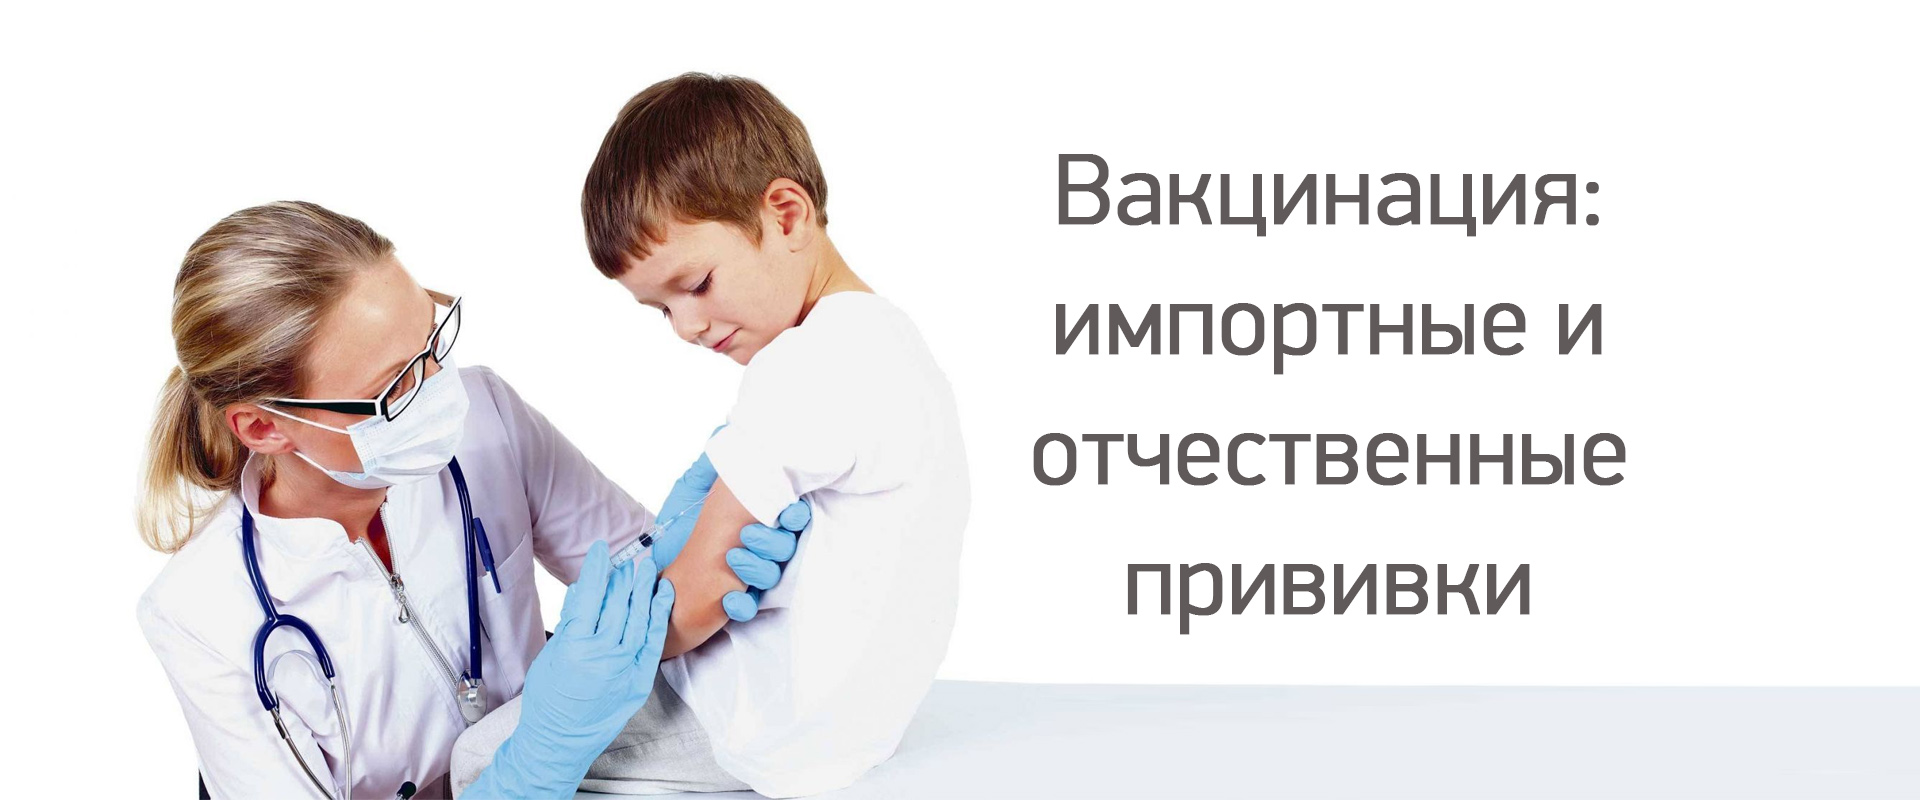 Вакцинация в медицинском центре "Здоровый ребенок"